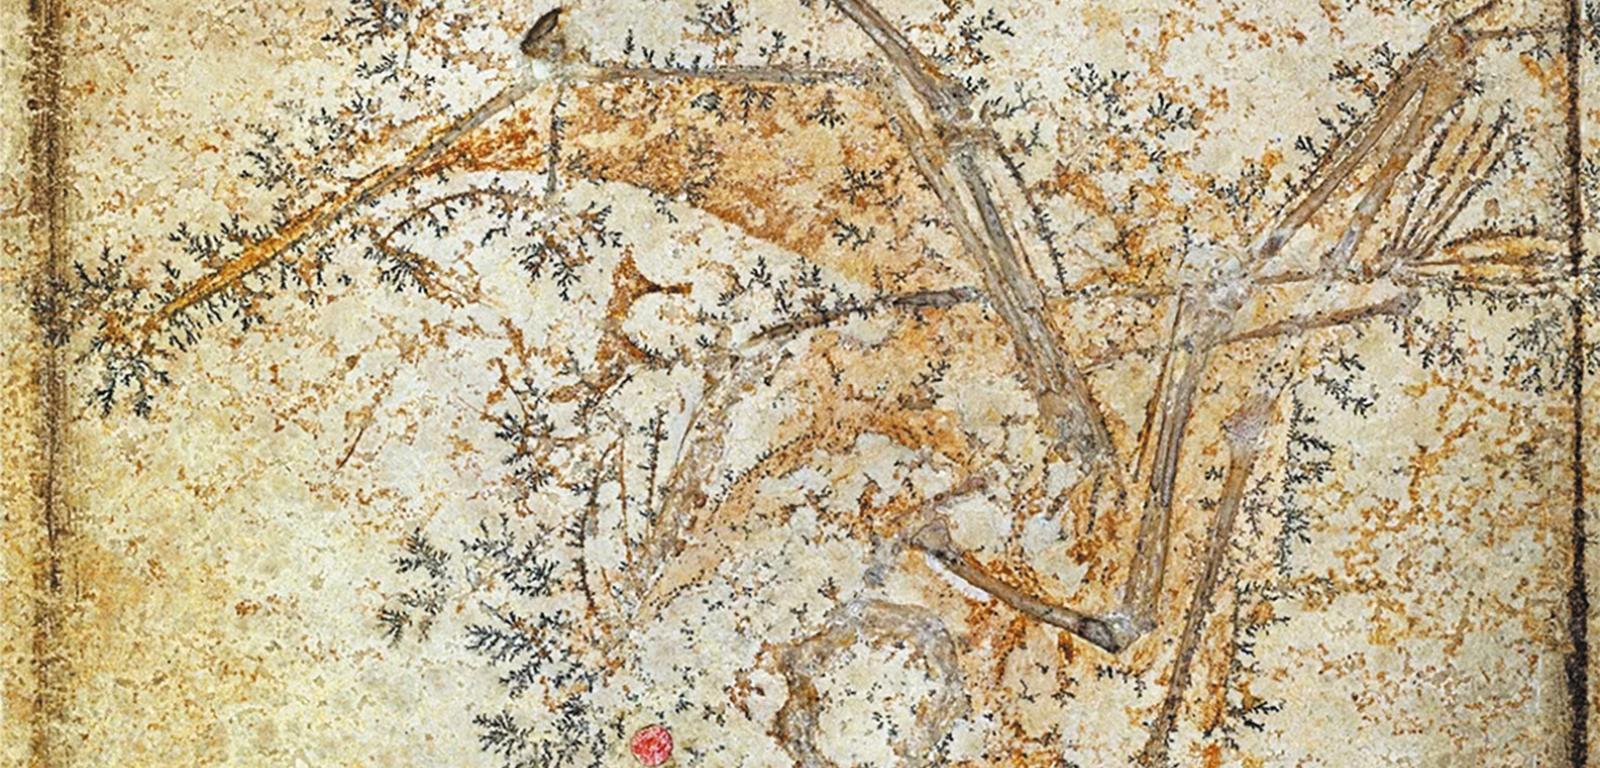 Skamieniały szkielet pterozaura z widocznymi miękkimi częściami ciała.